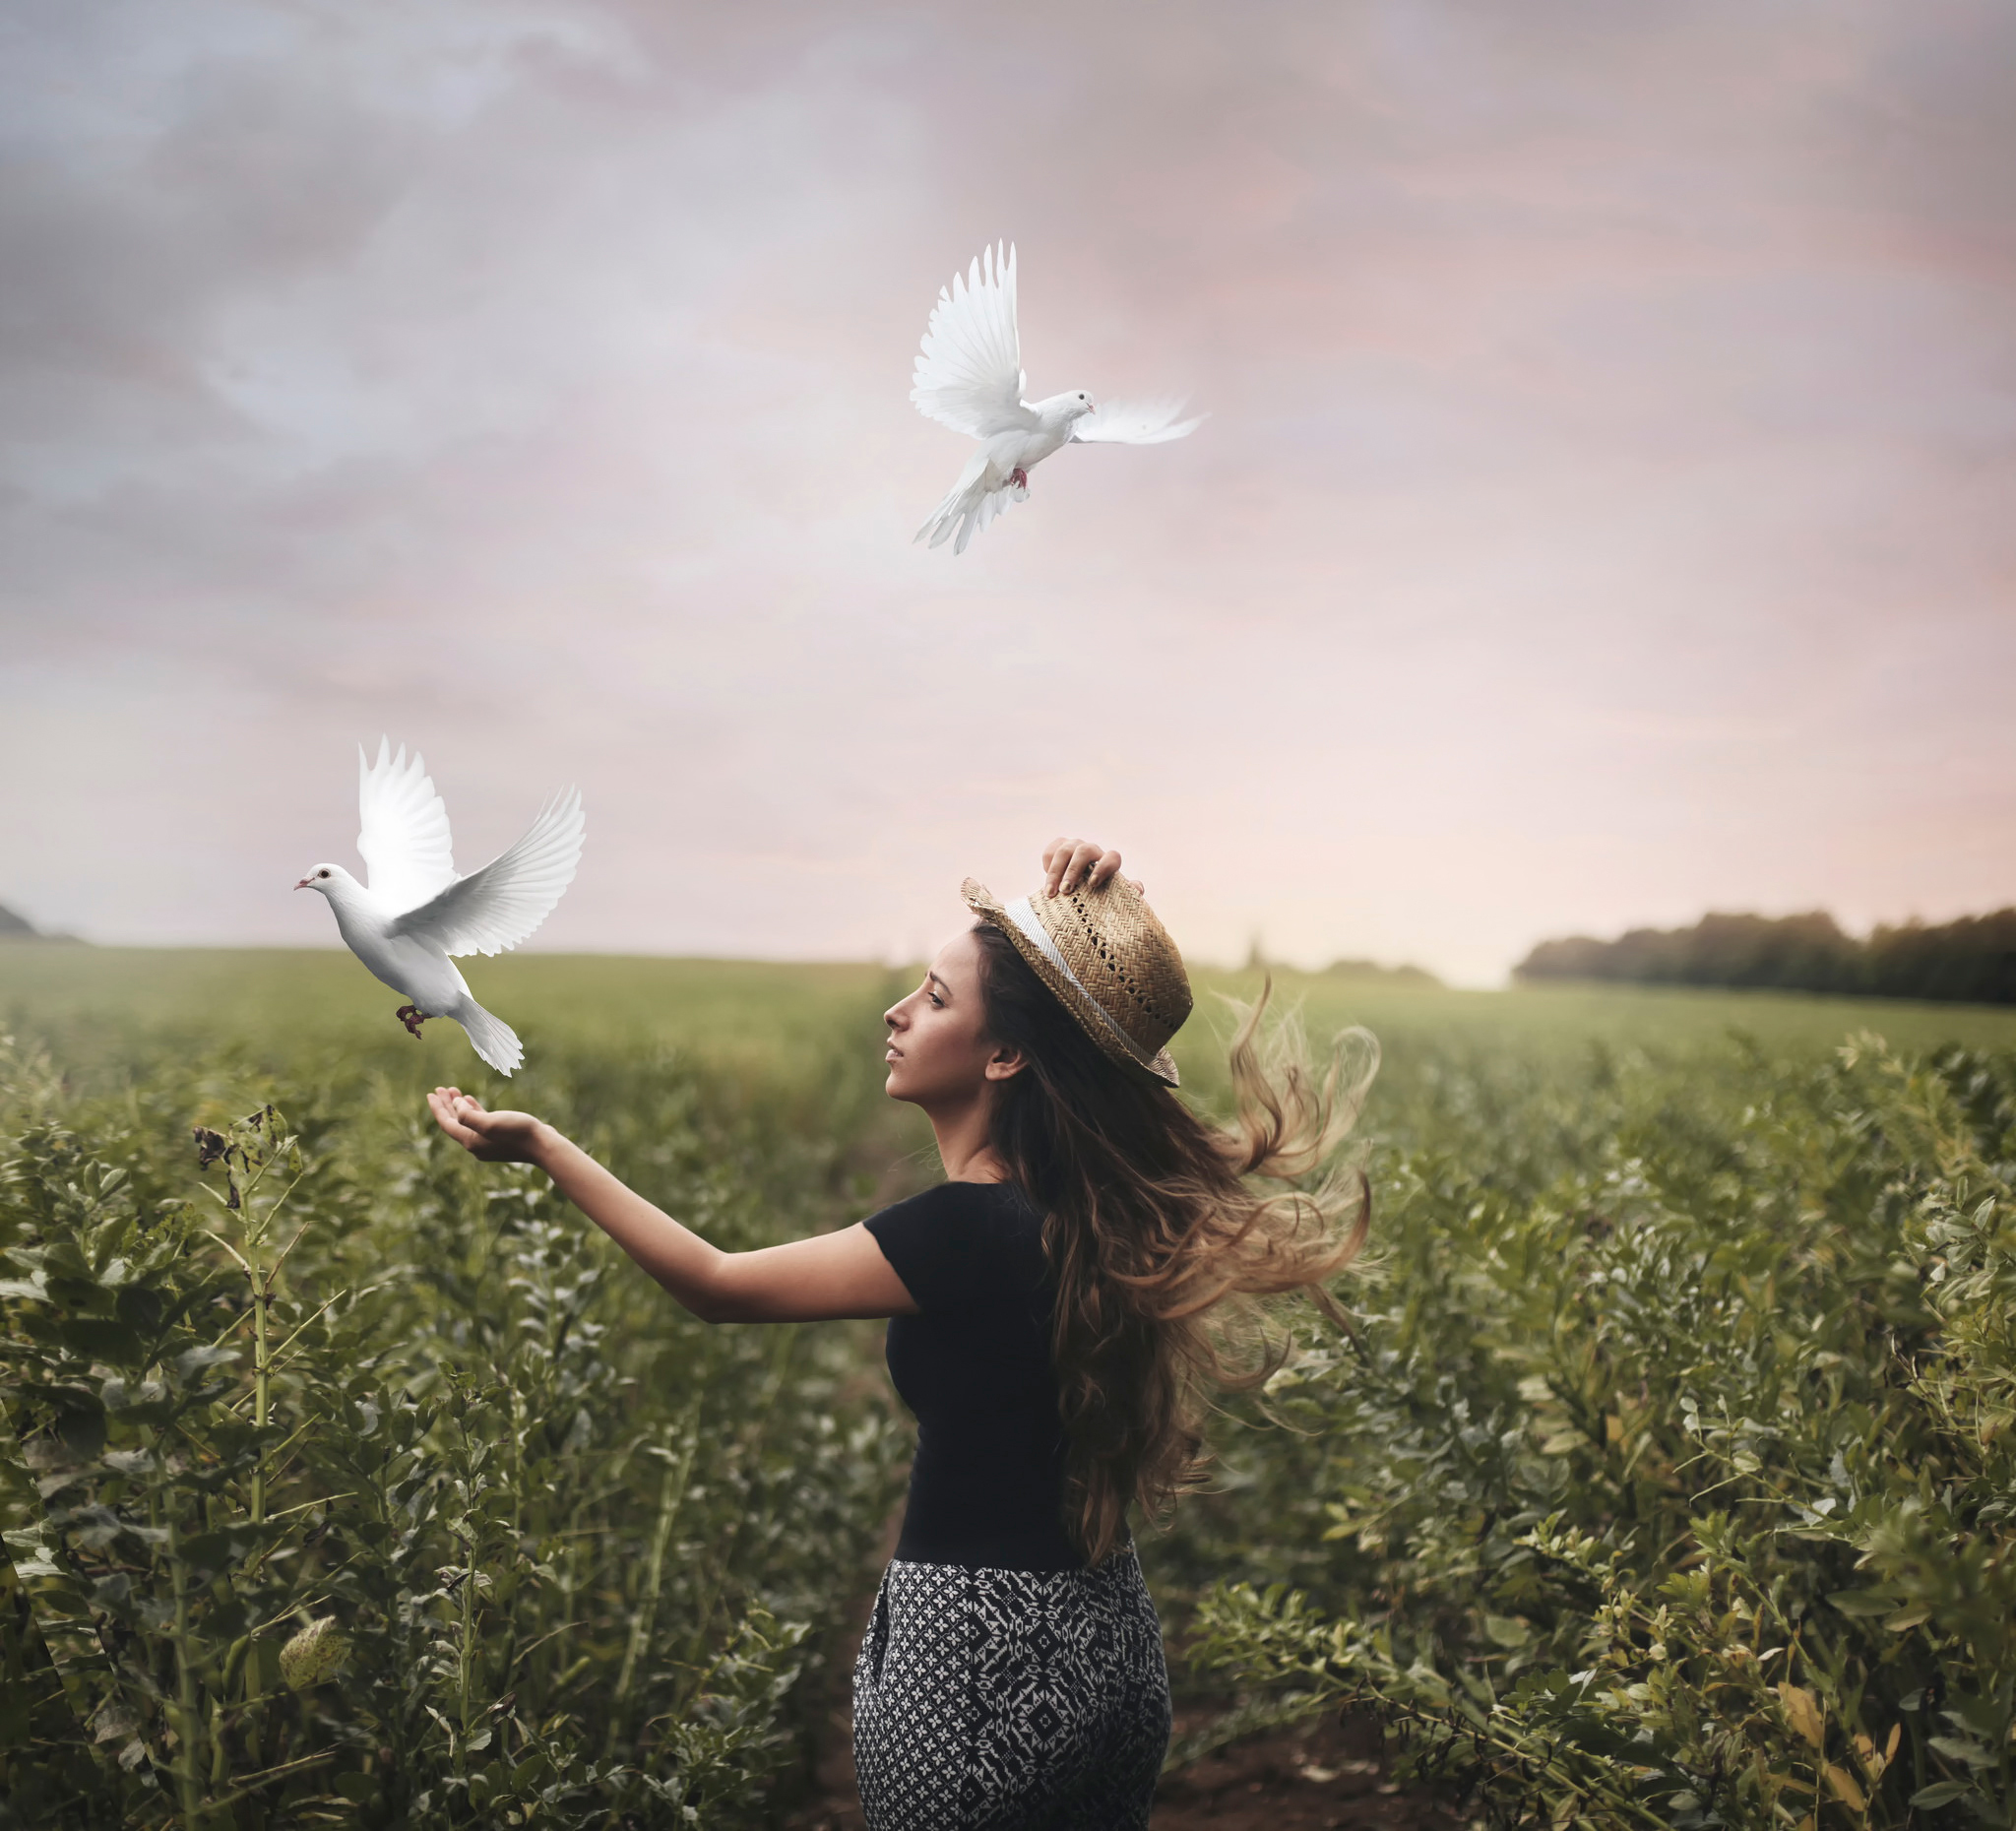 Автономная свобода. Птица свободы. Девушка выпускает птицу. Девушка с голубем в руках. Человек птица.